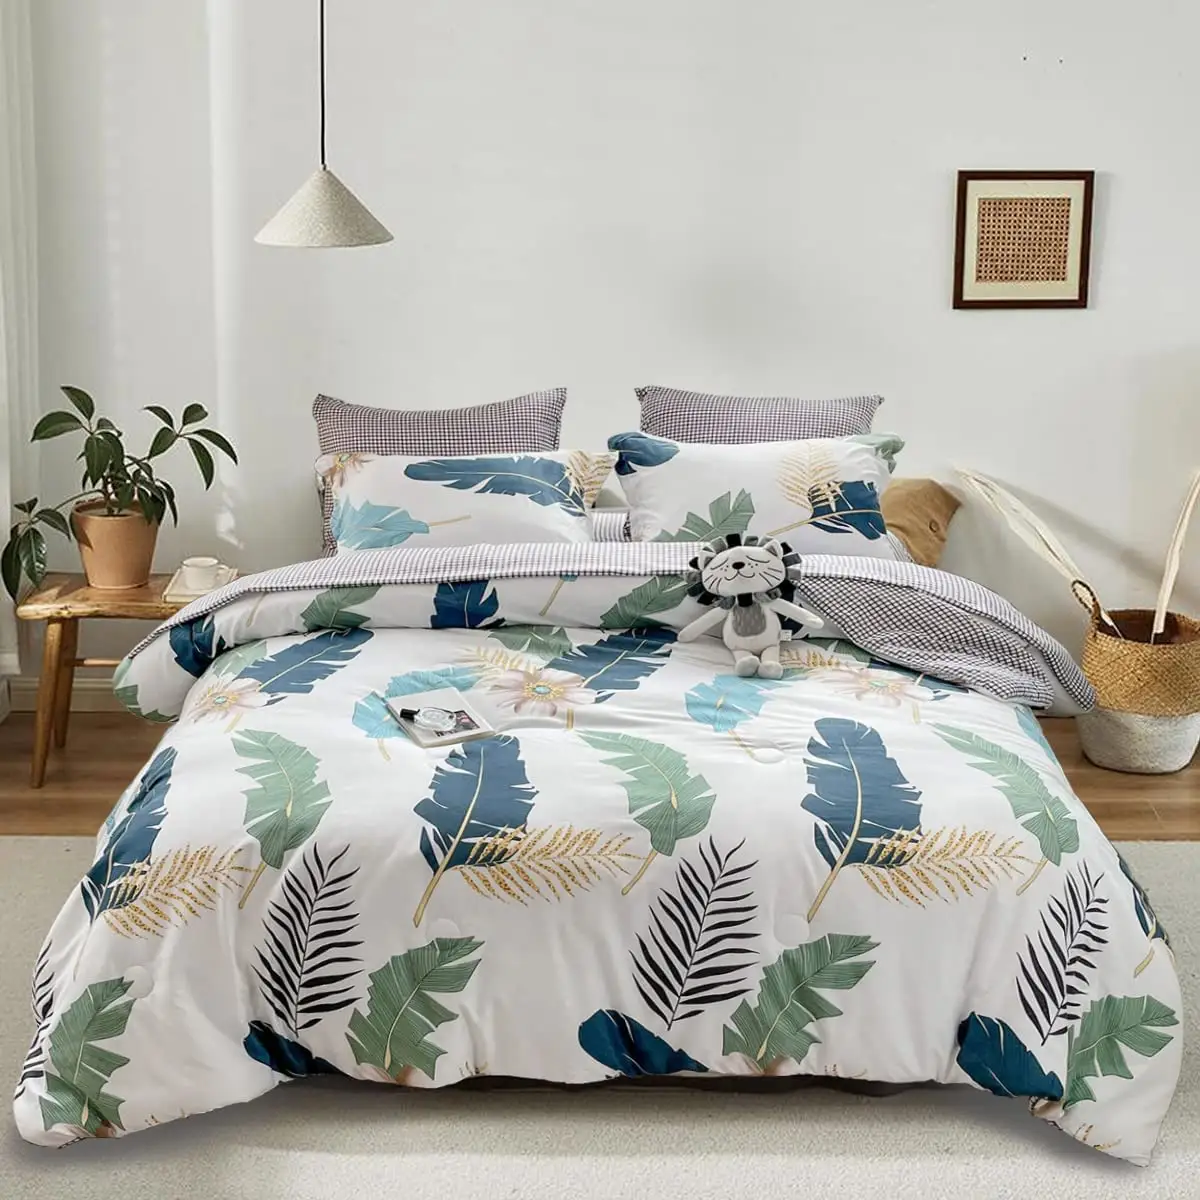 녹색 열대 이불 커버 세트 시트 이불 커버 및 베갯잇이있는 흰색 침구 세트에 인쇄 된 극세사 꽃 침대